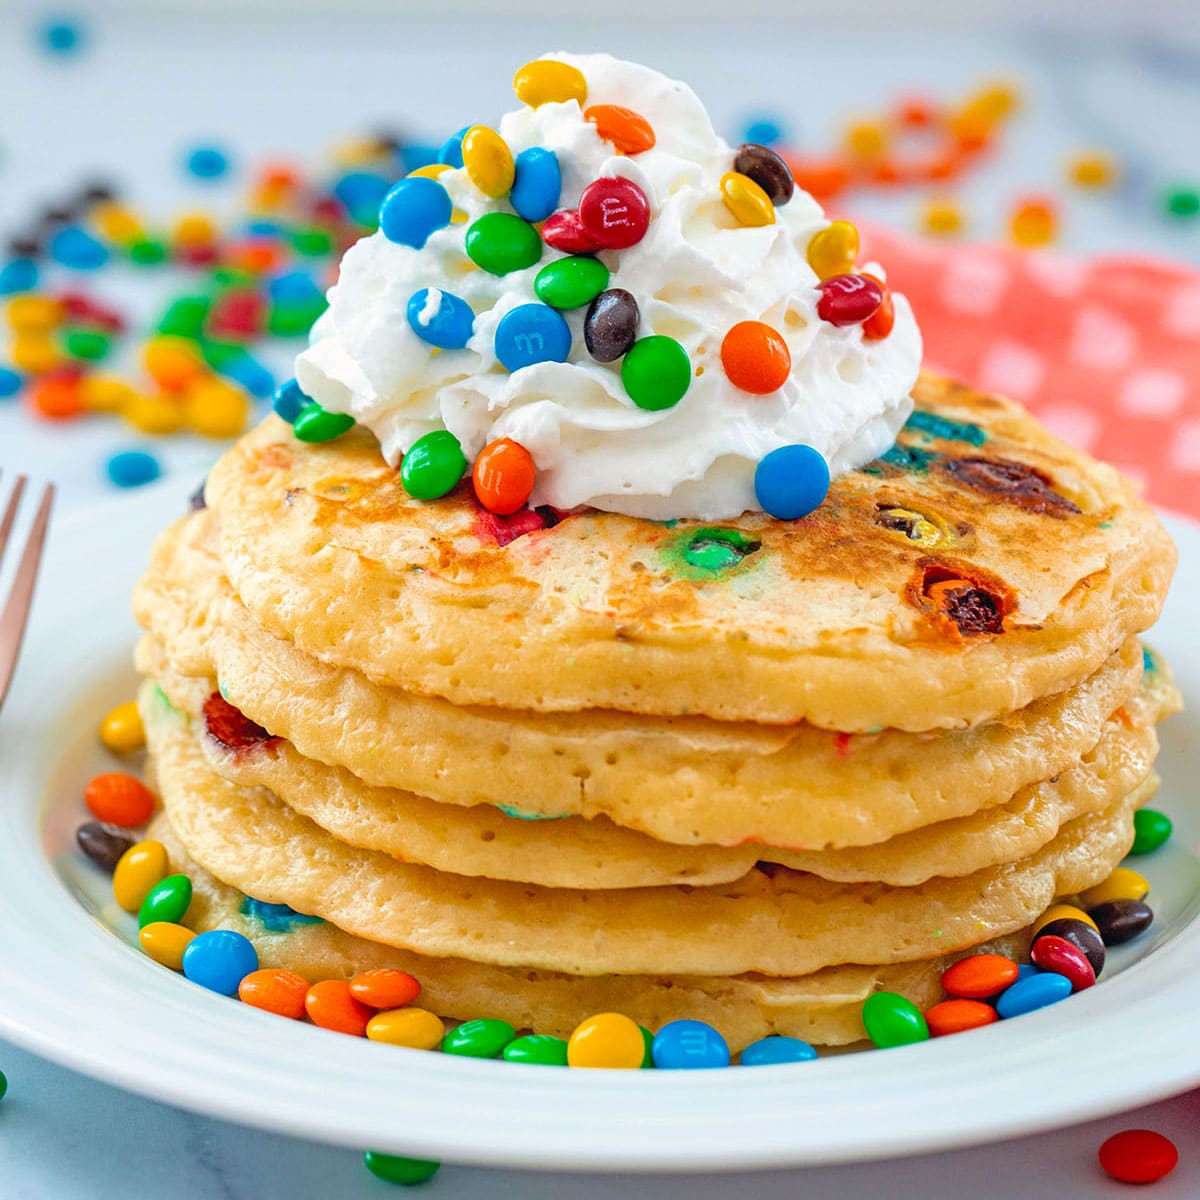 https://wearenotmartha.com/wp-content/uploads/mm-pancakes-featured.jpg